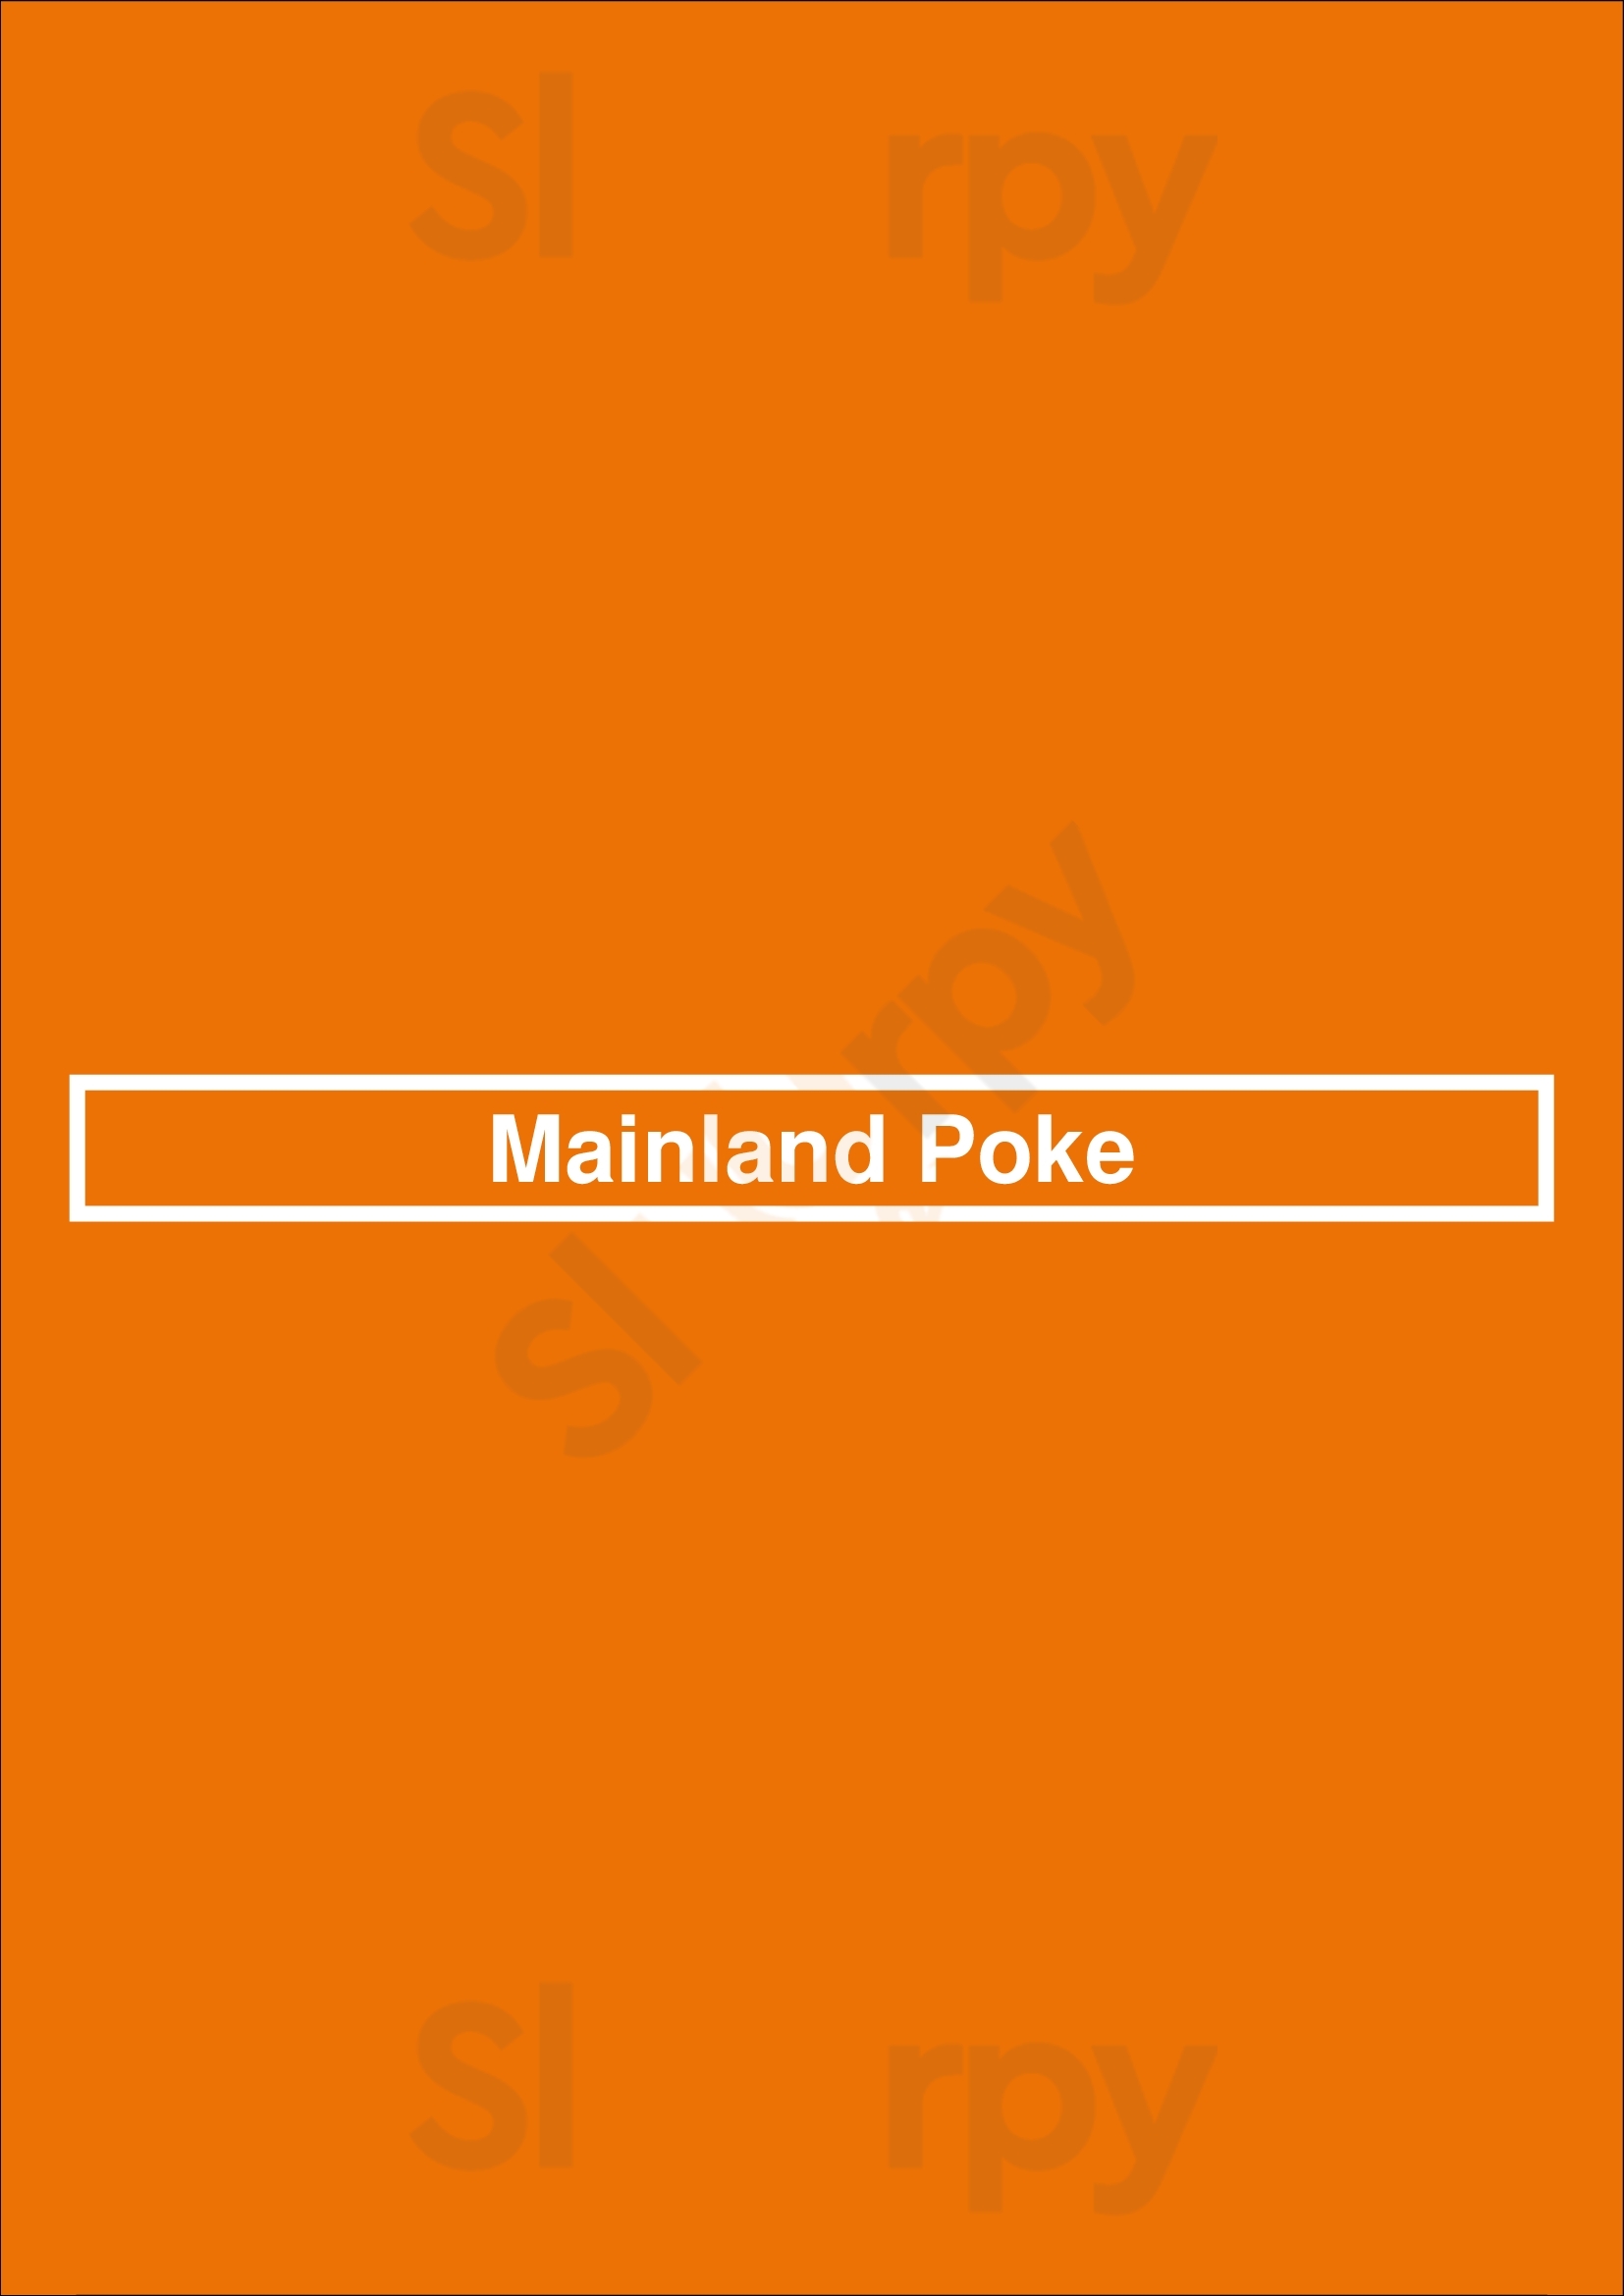 Mainland Poke Santa Monica Menu - 1